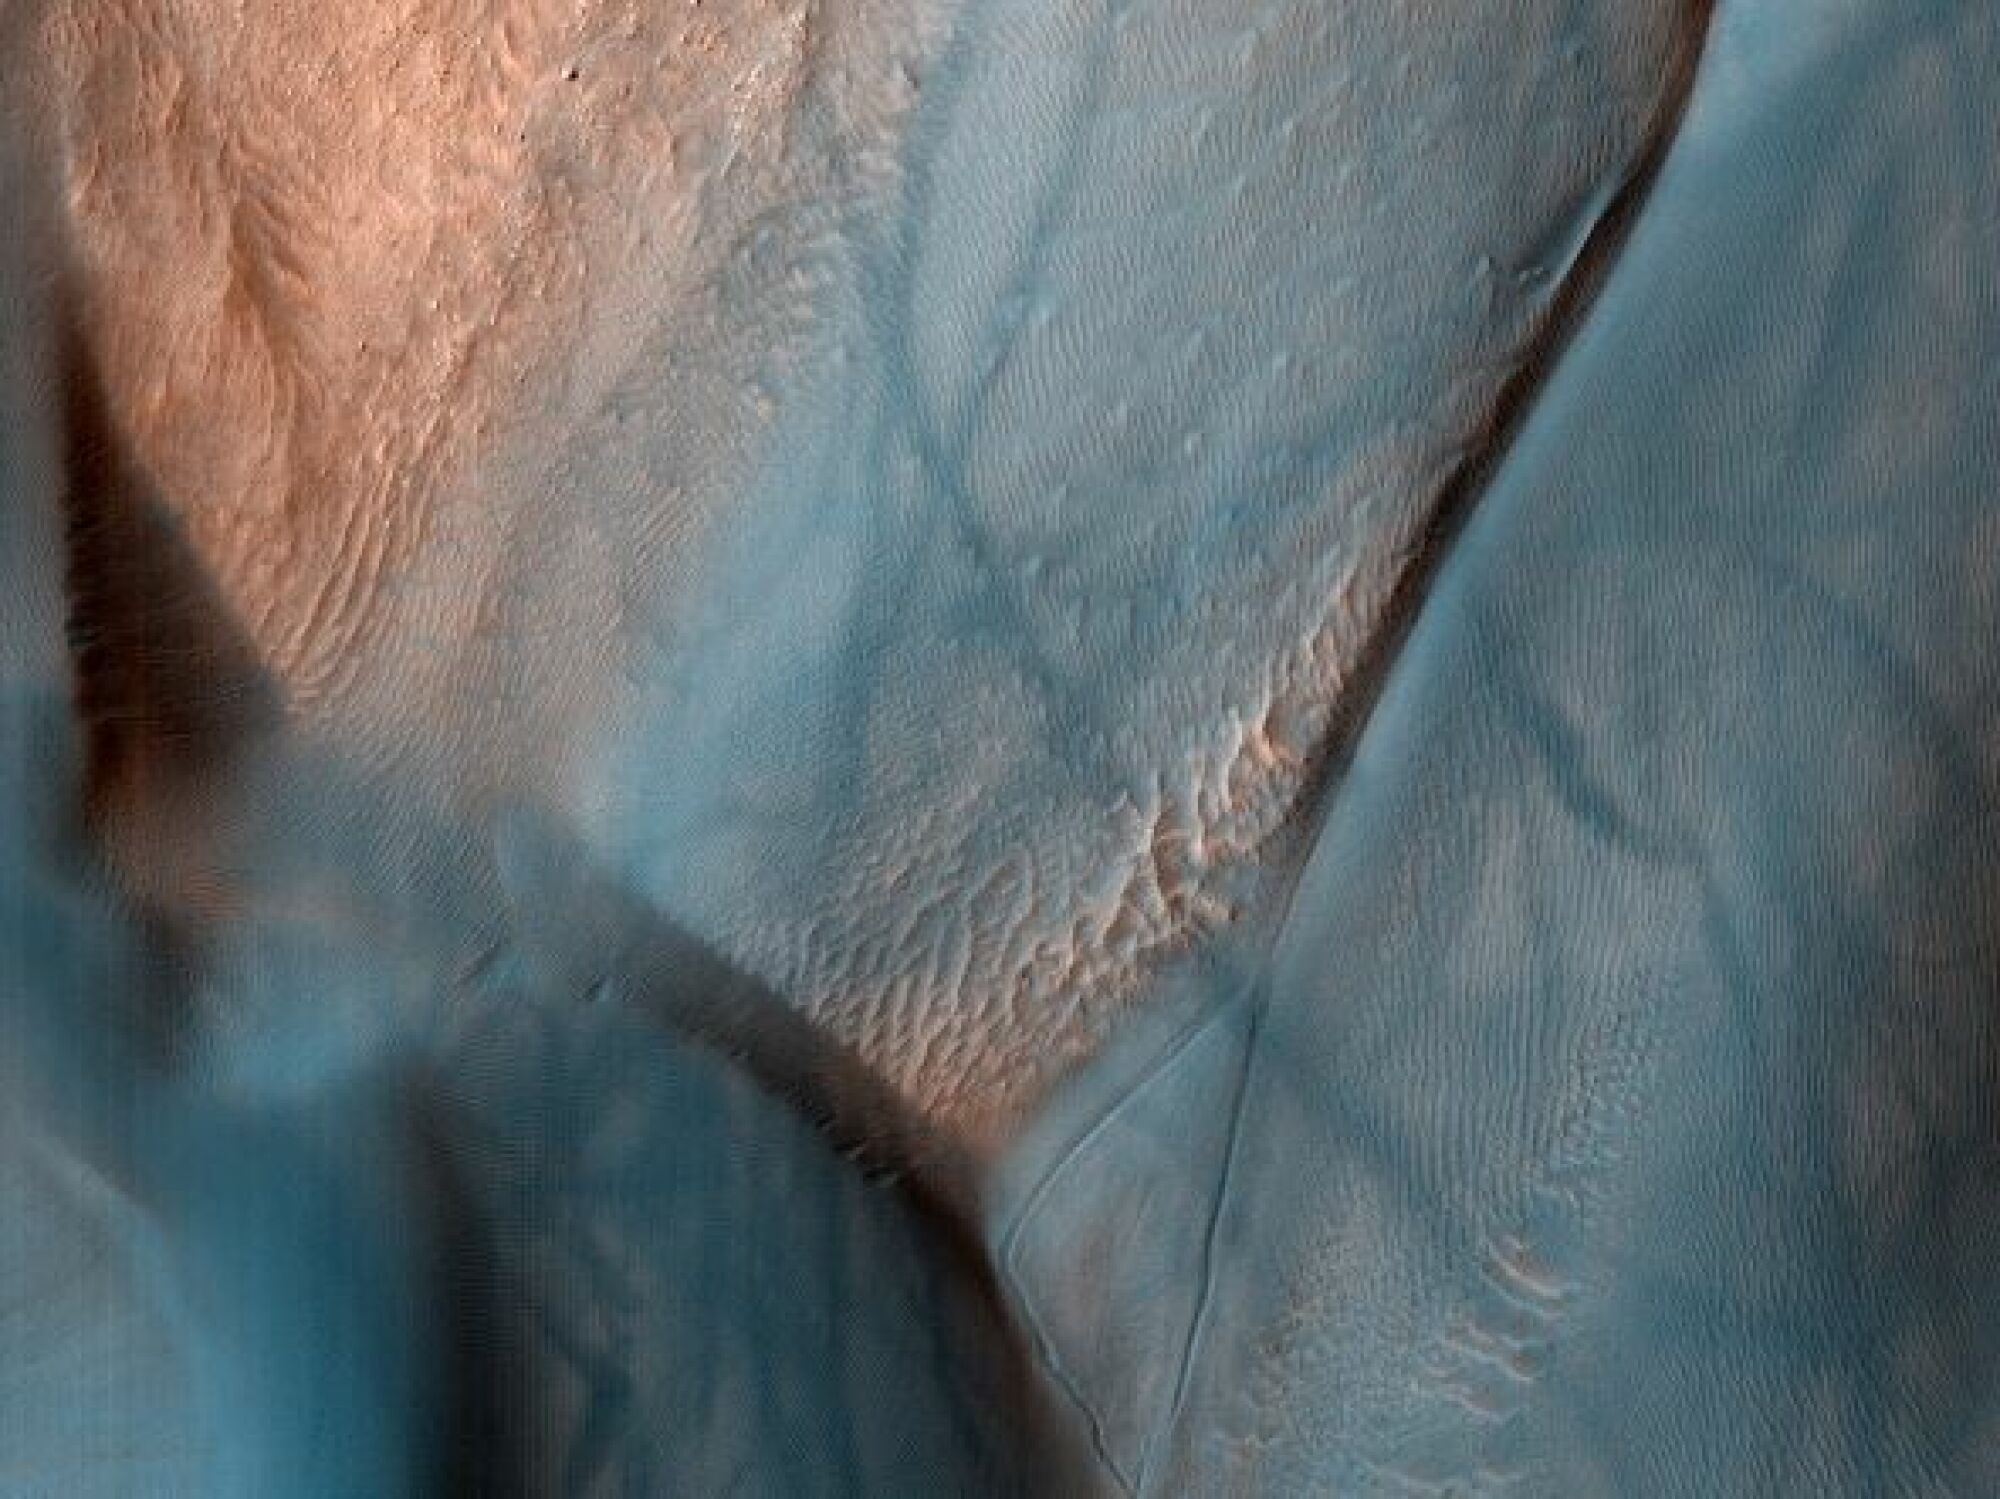 traces de diable de poussière dans un cratère de Mars